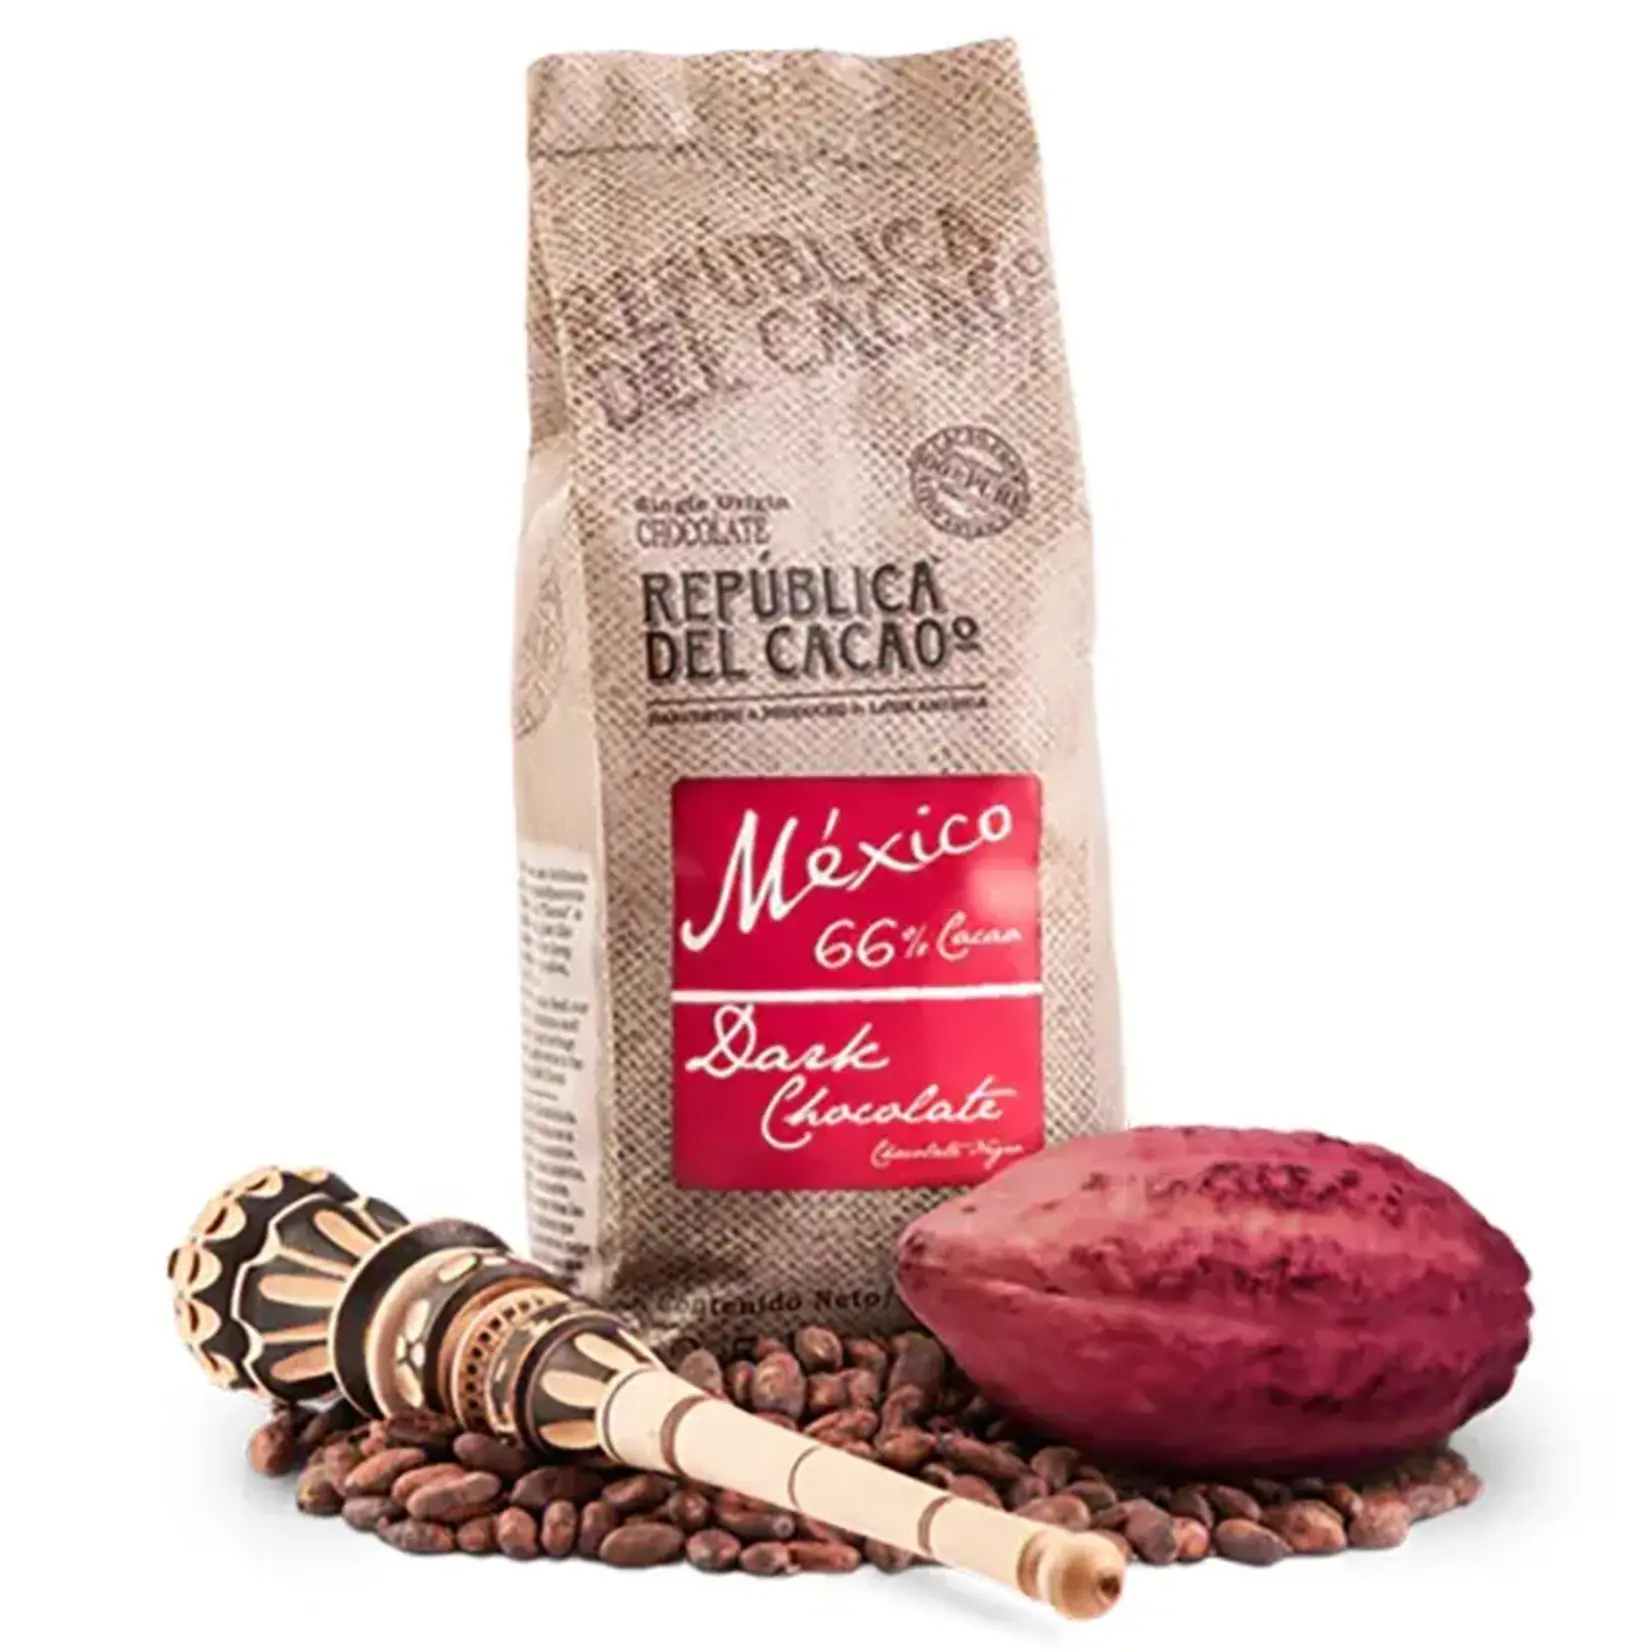 Republica del Cacao Republica del Cacao - Mexico Dark Chocolate 66% - 5.5 lb